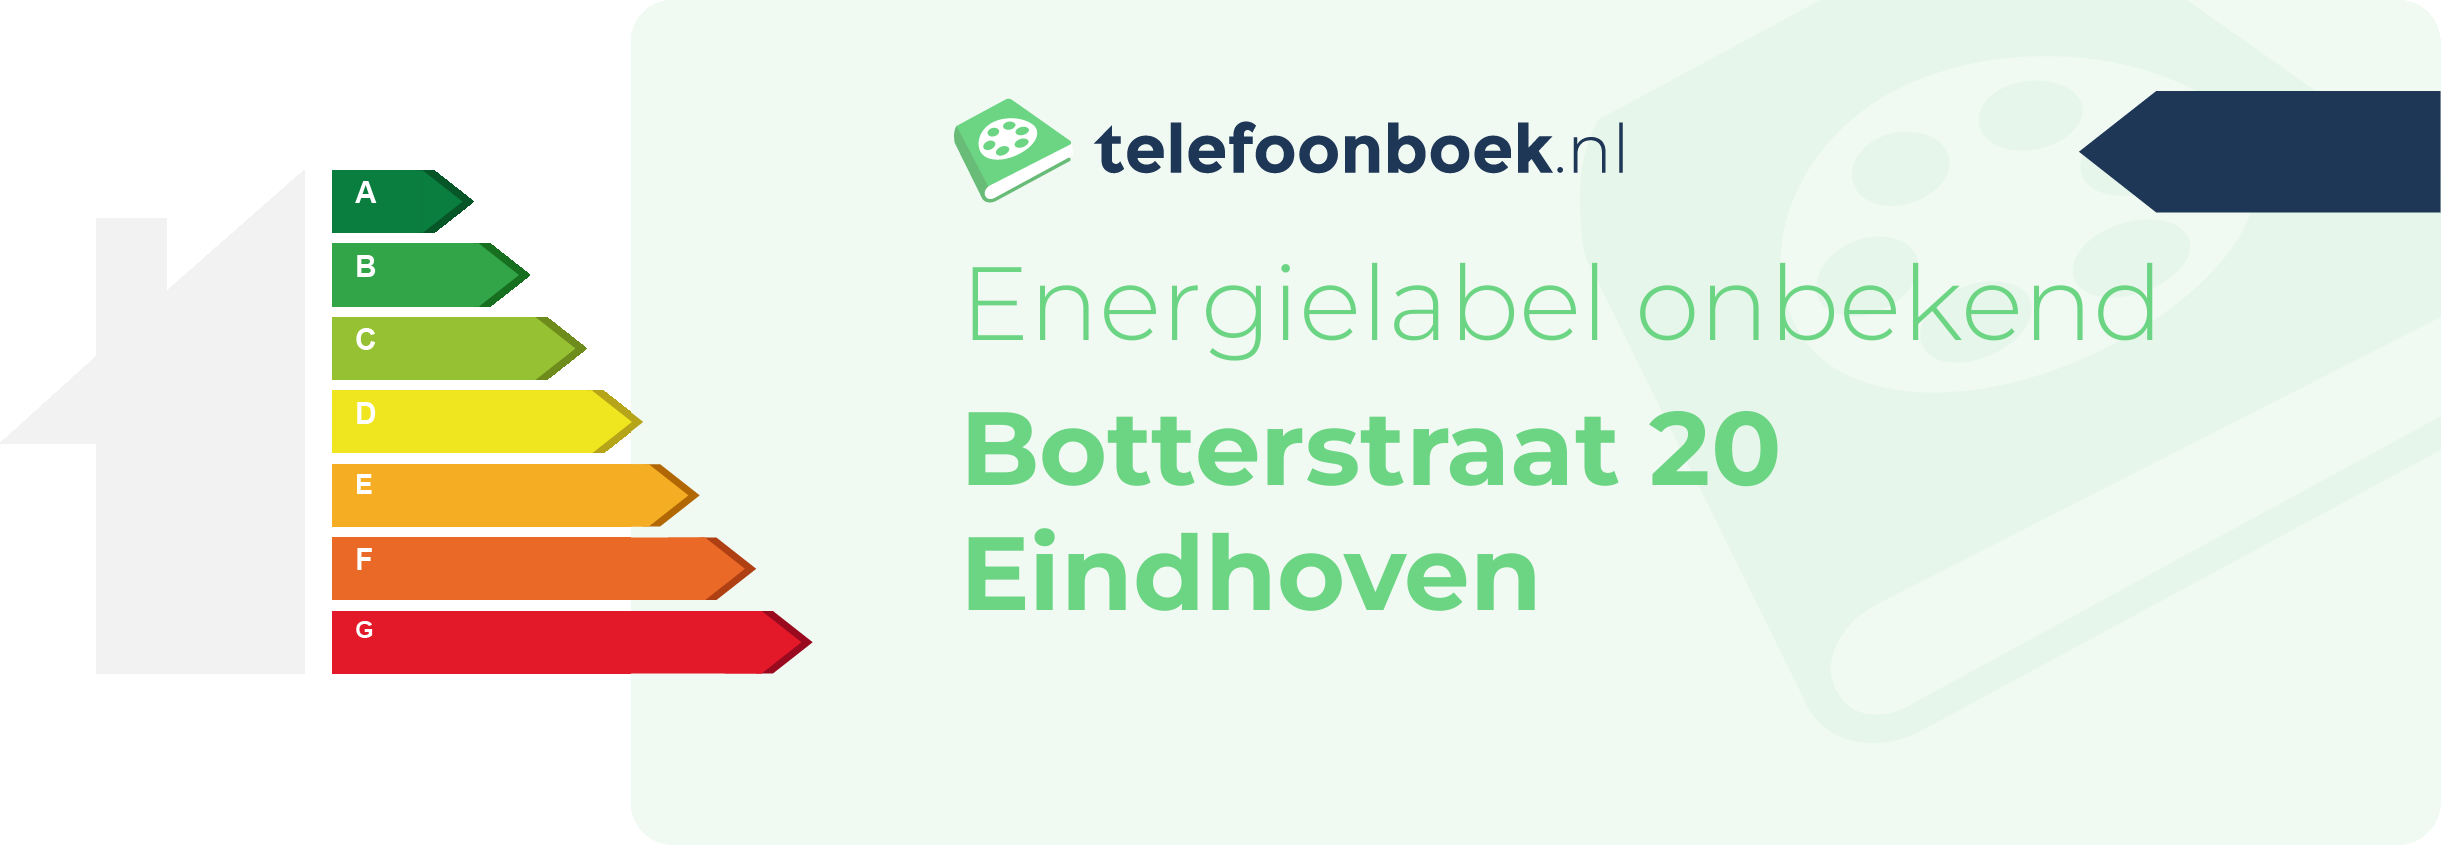 Energielabel Botterstraat 20 Eindhoven